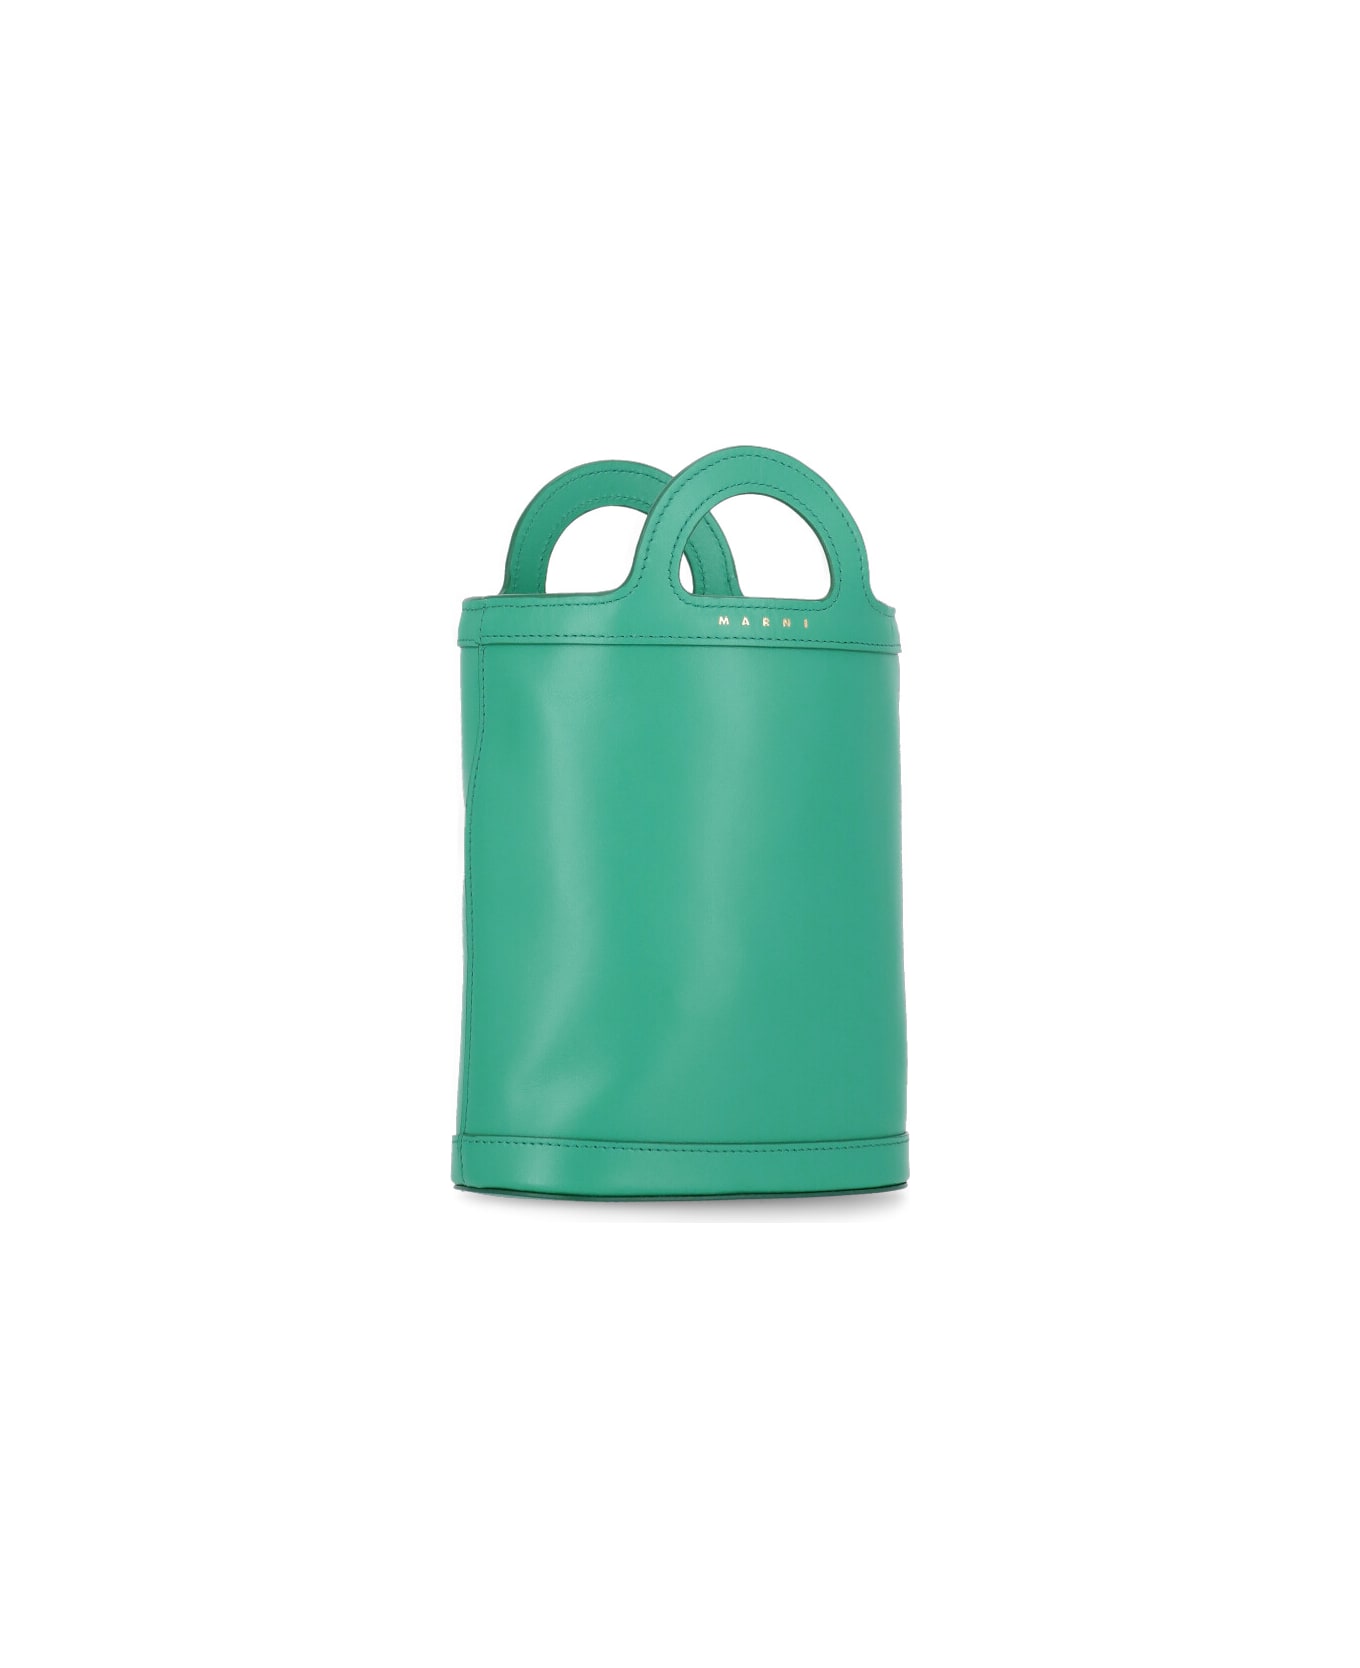 Marni Leather Hand Bag - Green